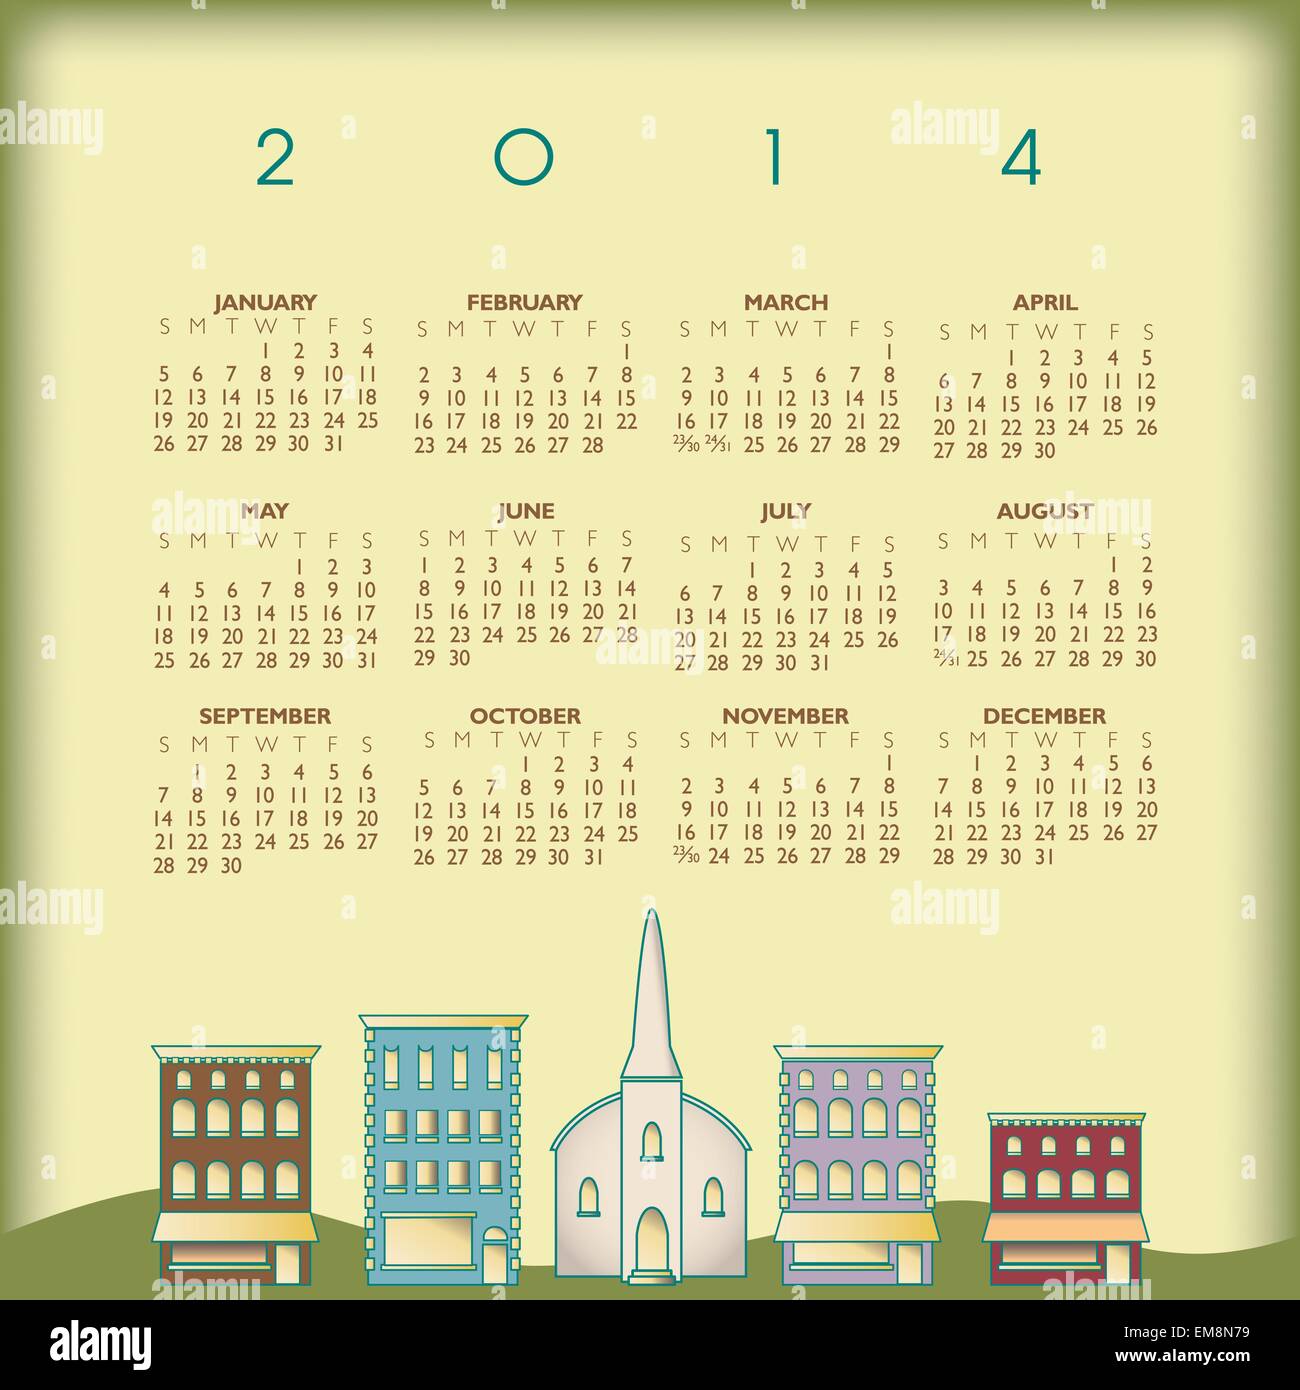 2014 Creative Small Town Calendar Stock Vector